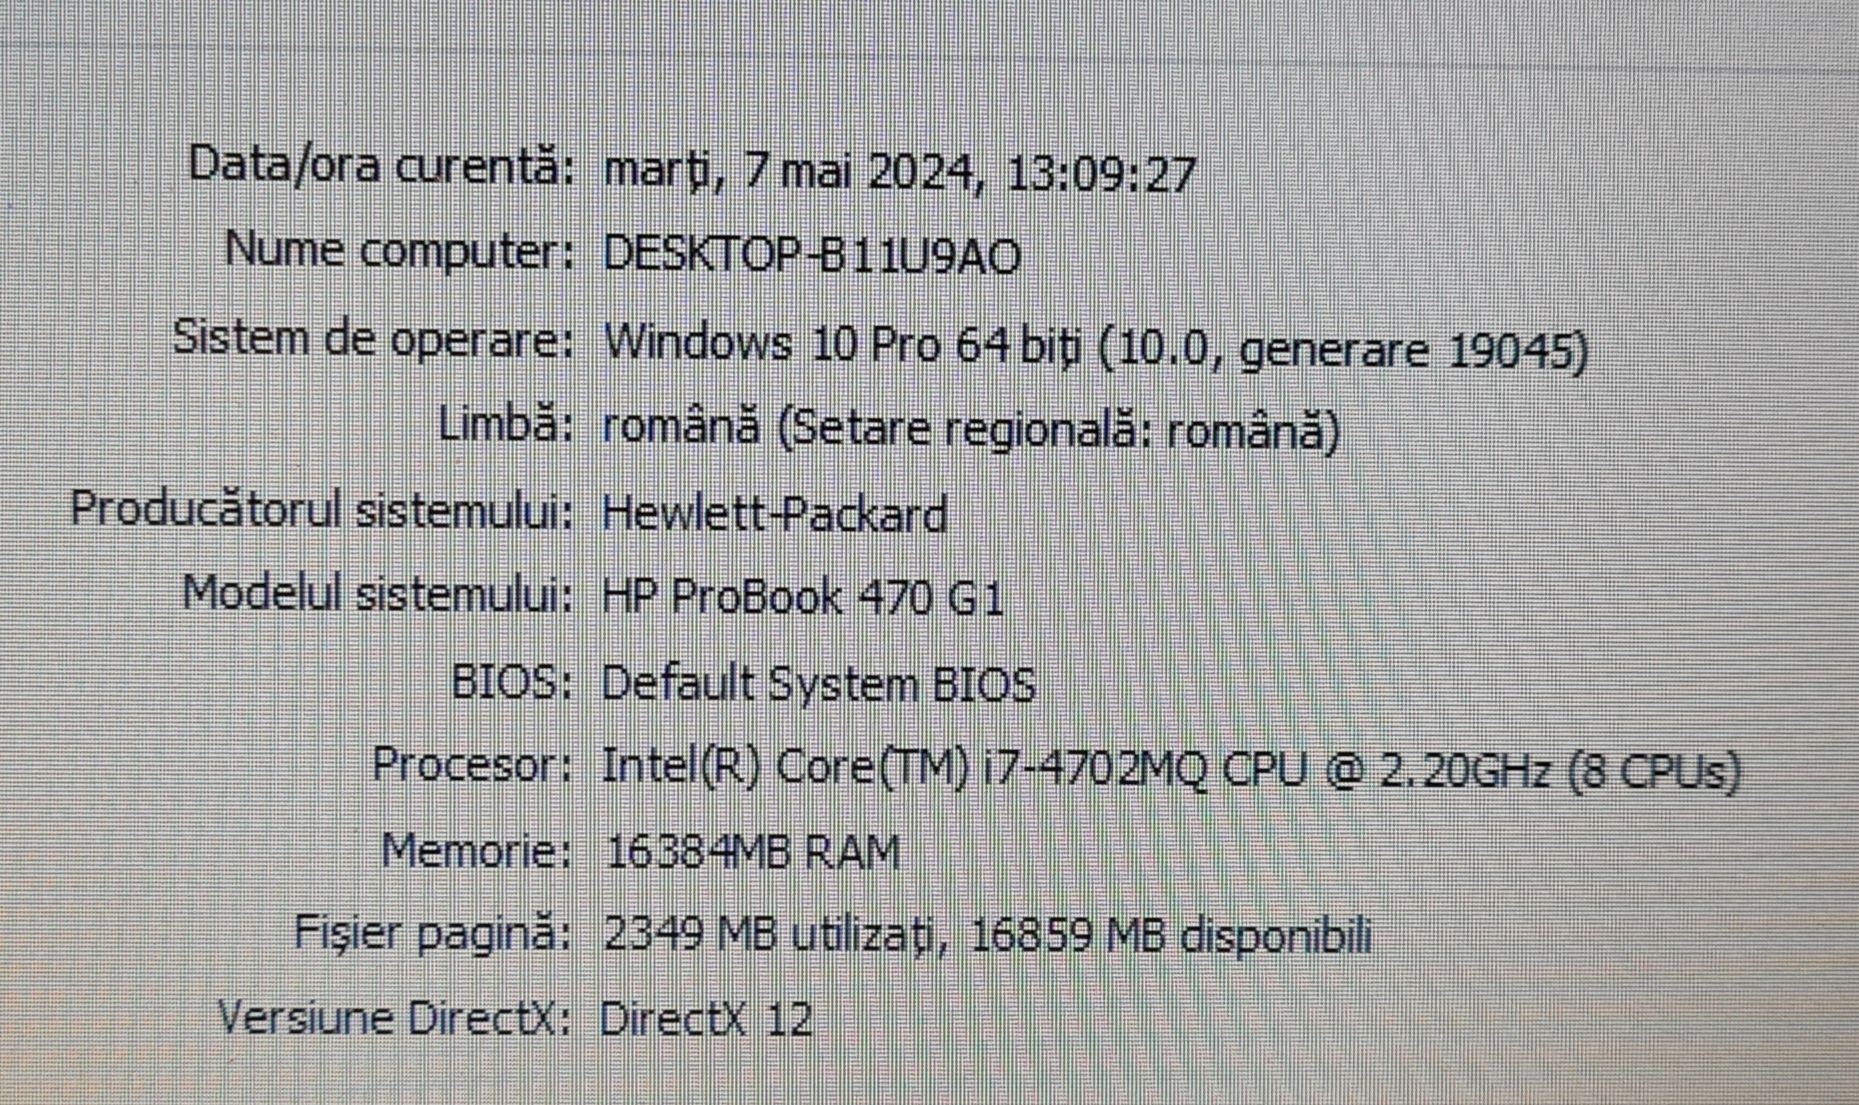 HP Probook 470 G1 i7 4702MQ, 16 GB DDR3, HDD 1 TB